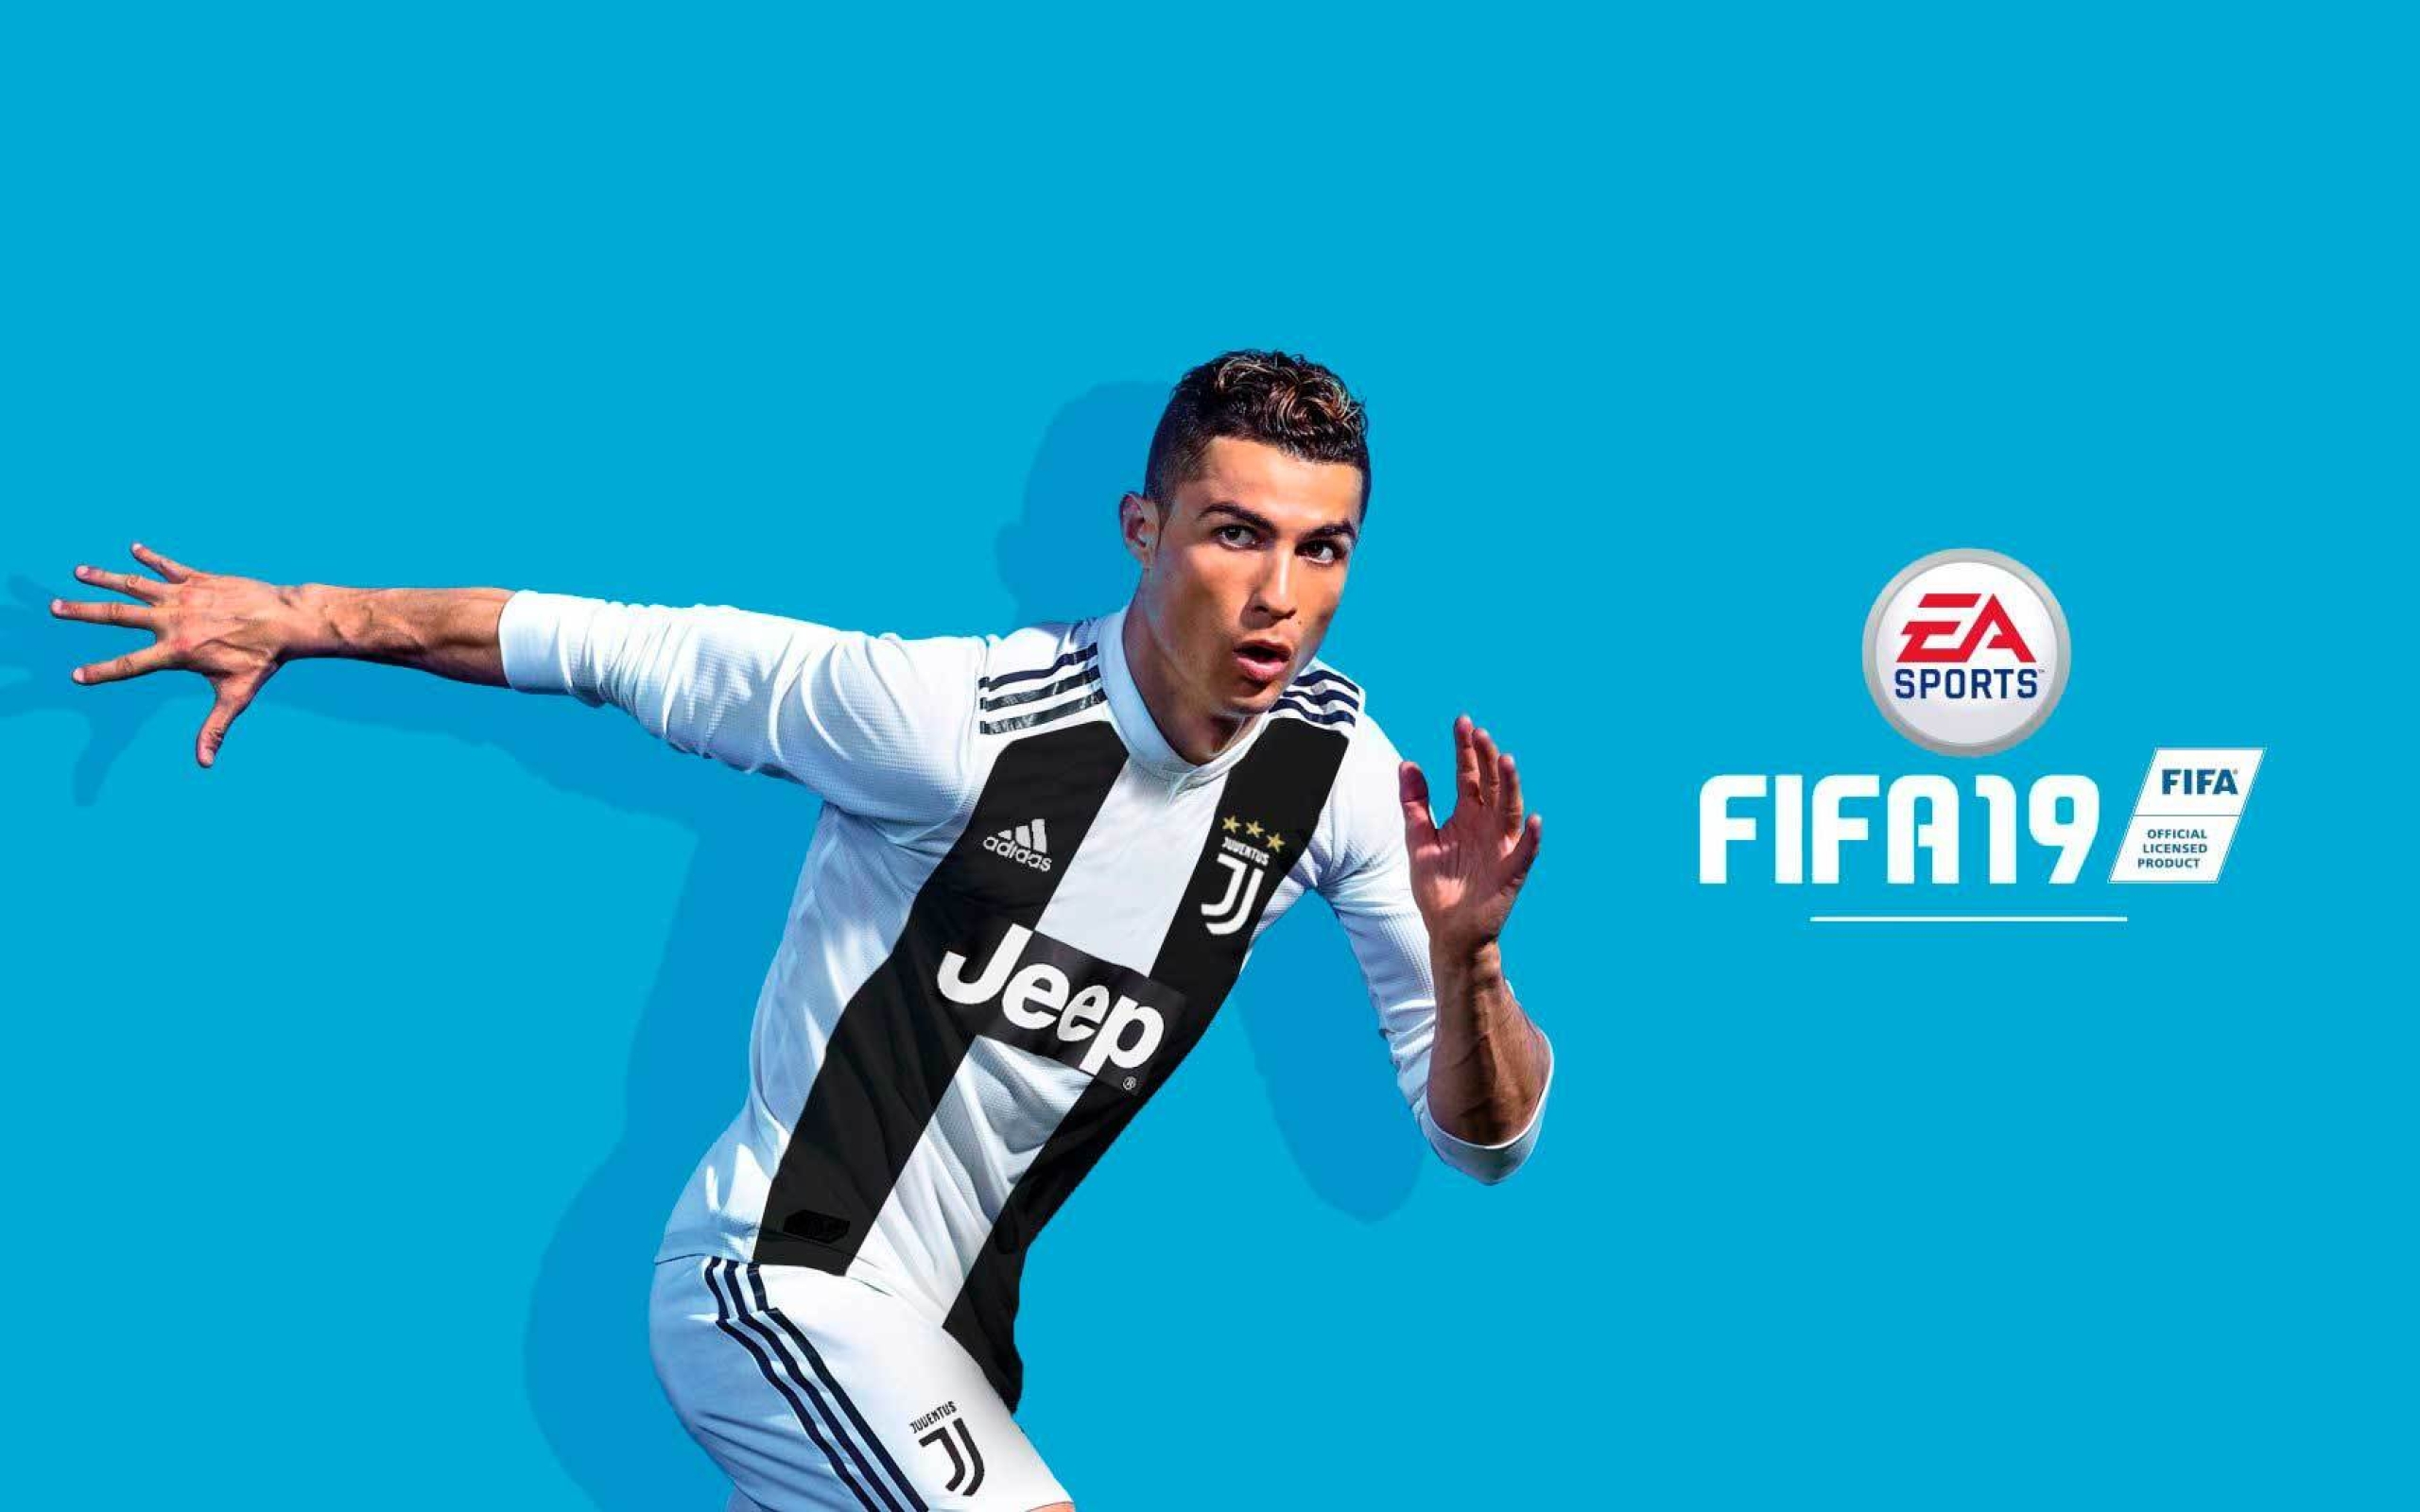 Cristiano Ronaldo Fifa 19 Game, Full HD Wallpaper